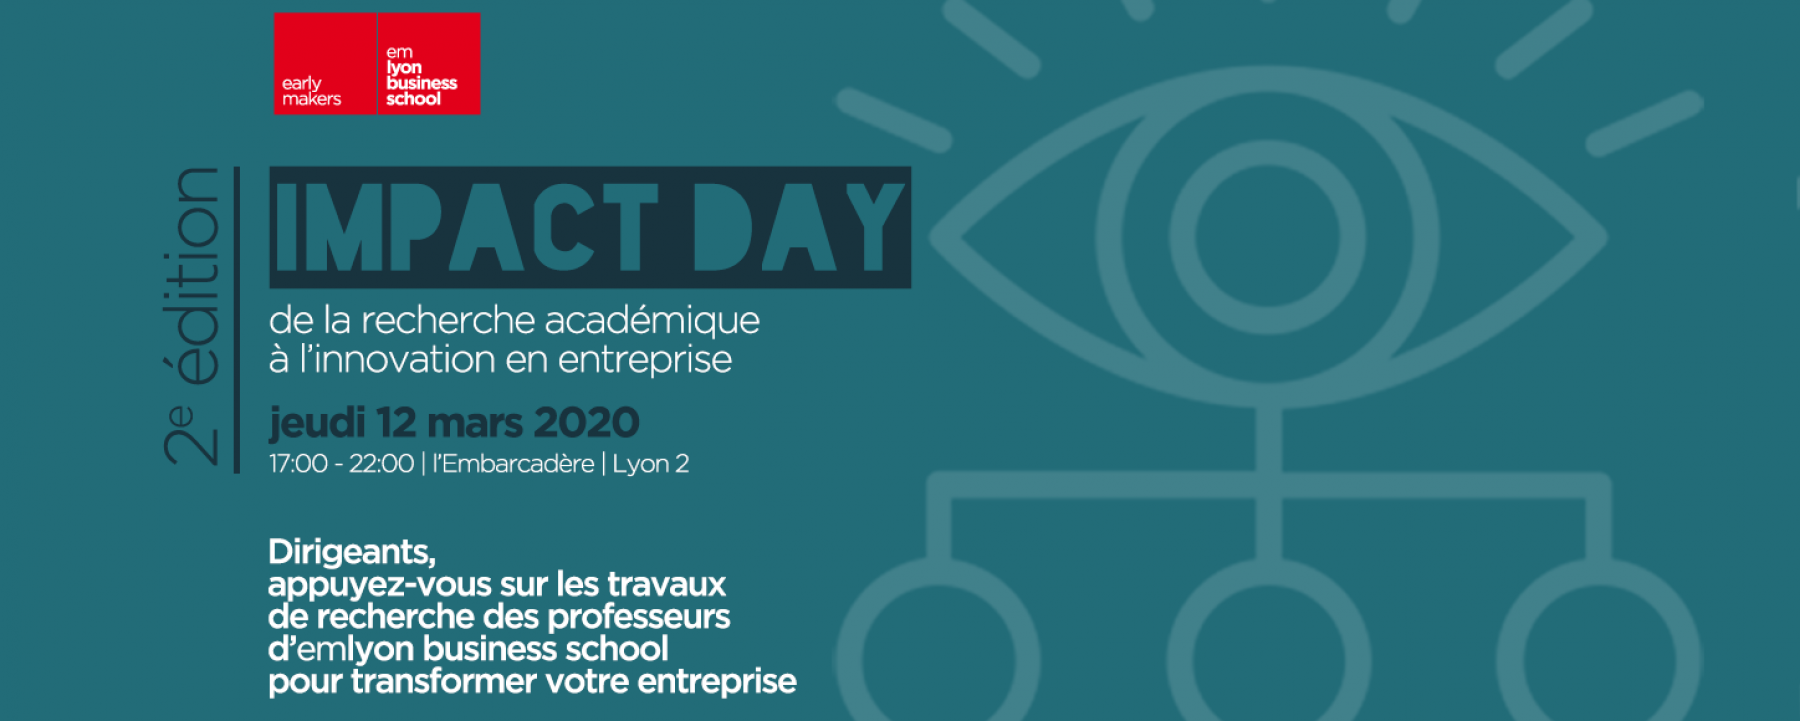 Événement Impact Day, organisé par l'EM Lyon Business School, à l'Embarcadère à Lyon, le 12 mars 2020